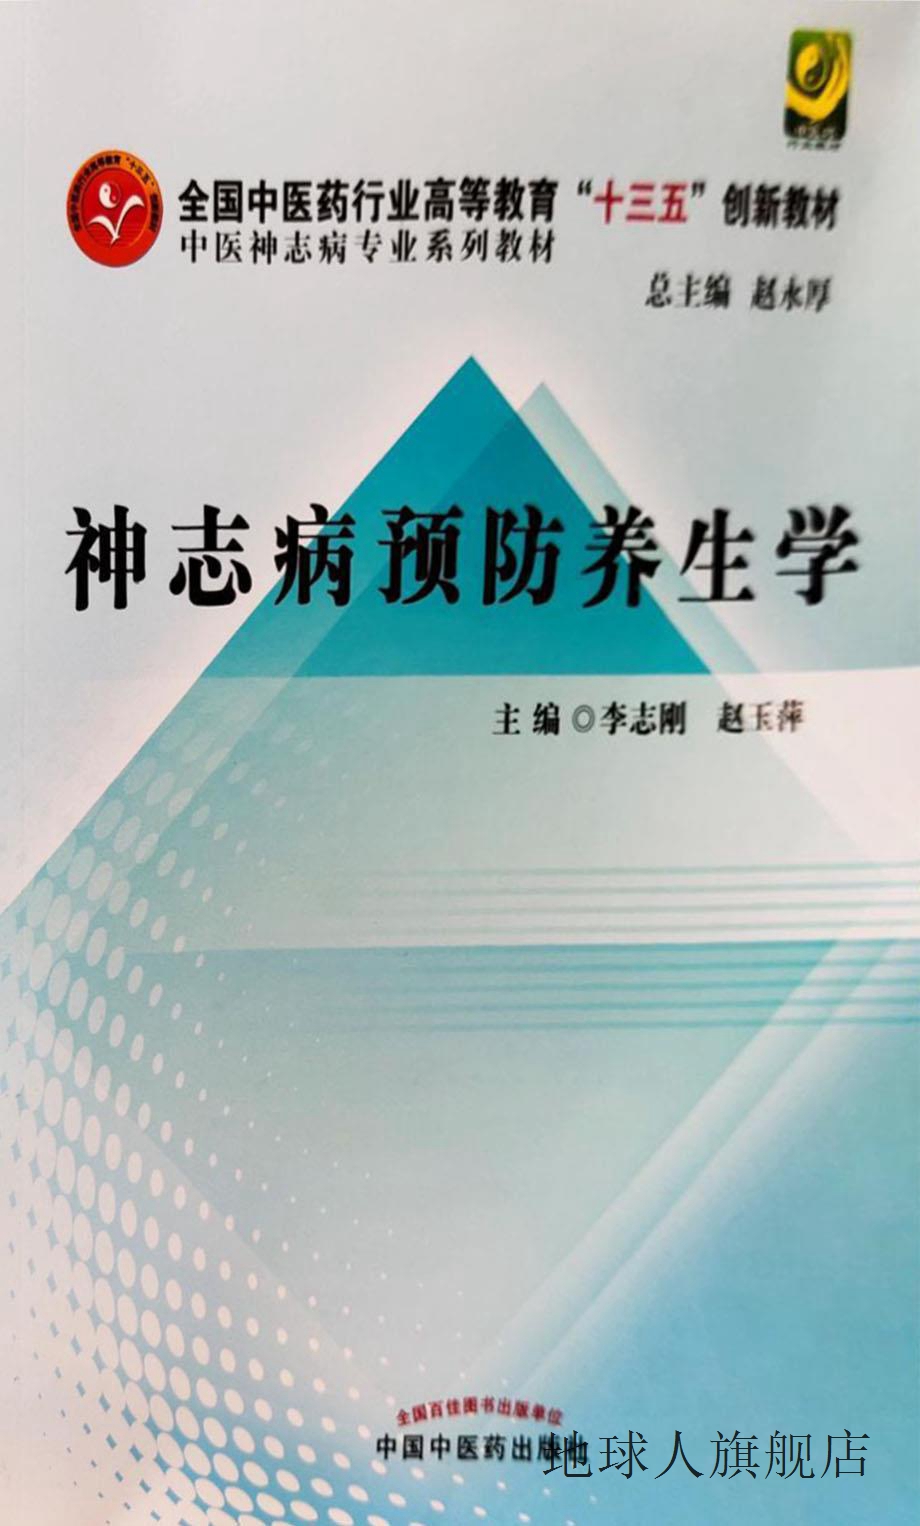 神志病预防养生学,李志刚,中国中医药出版社,9787513228312